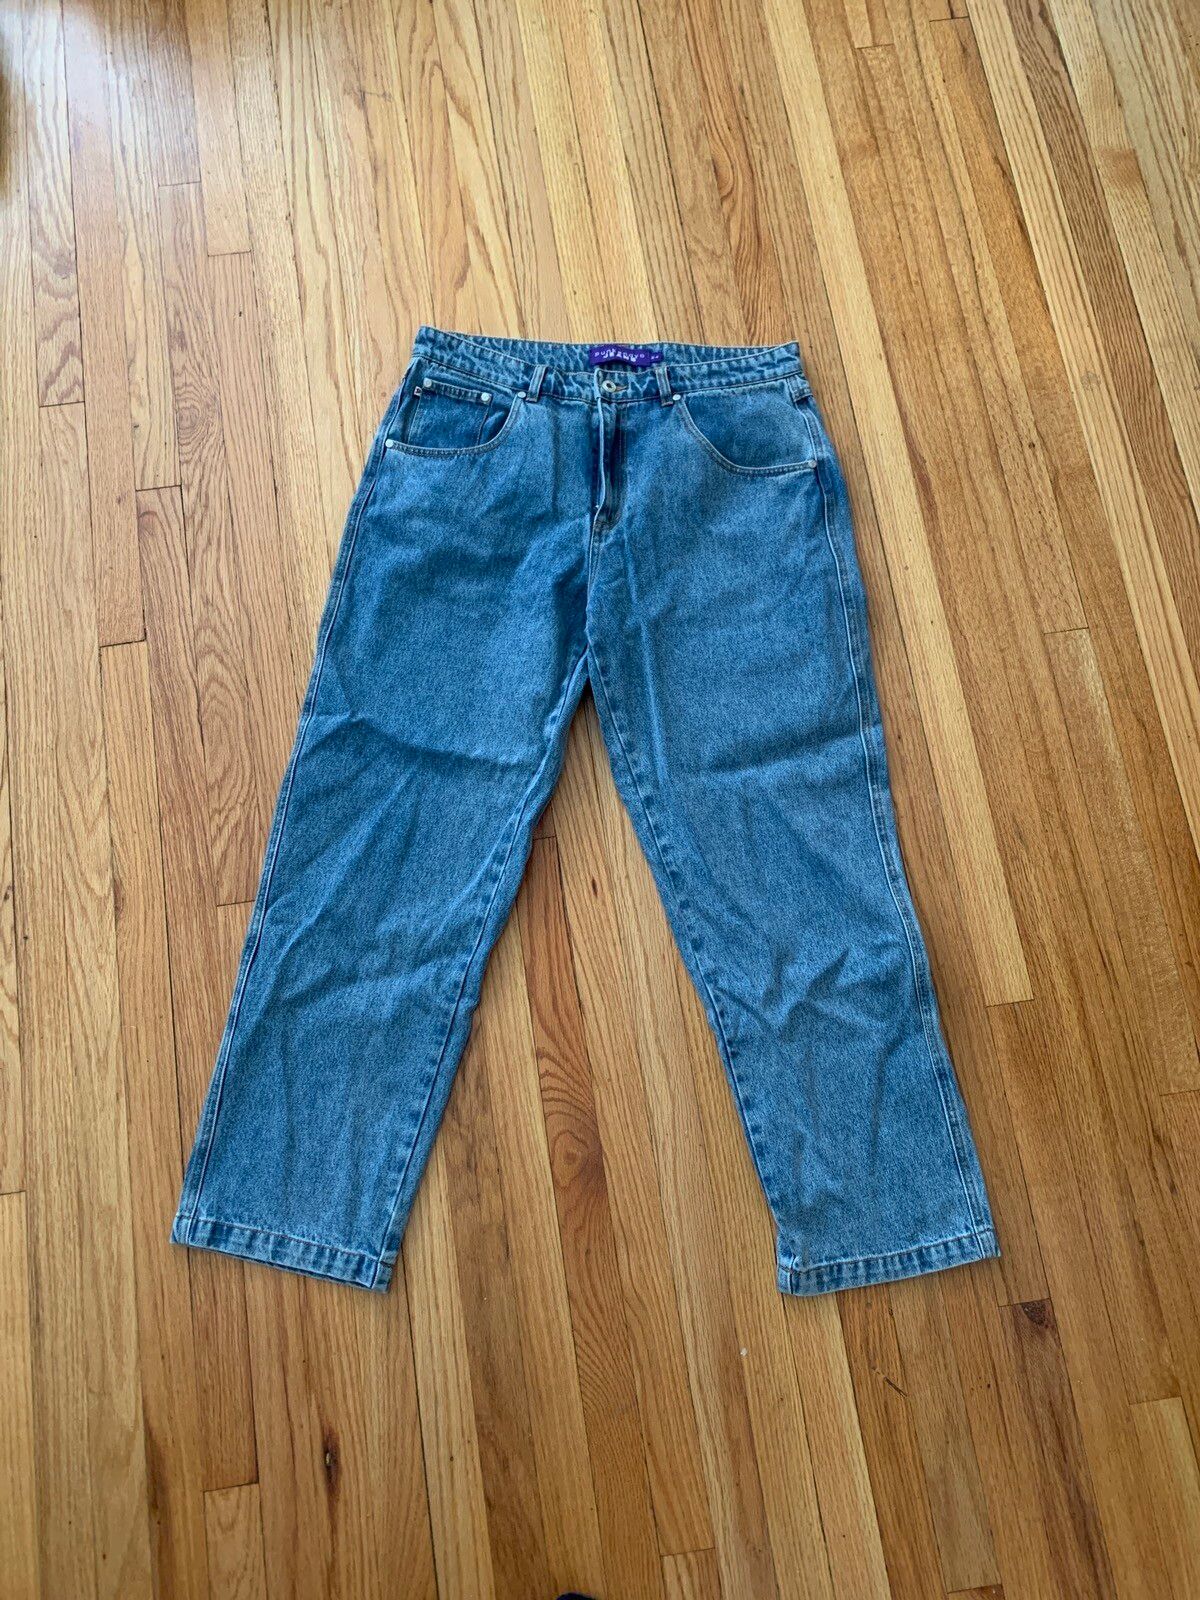 一回着用punkandyo blue jeans 36 - デニム/ジーンズ